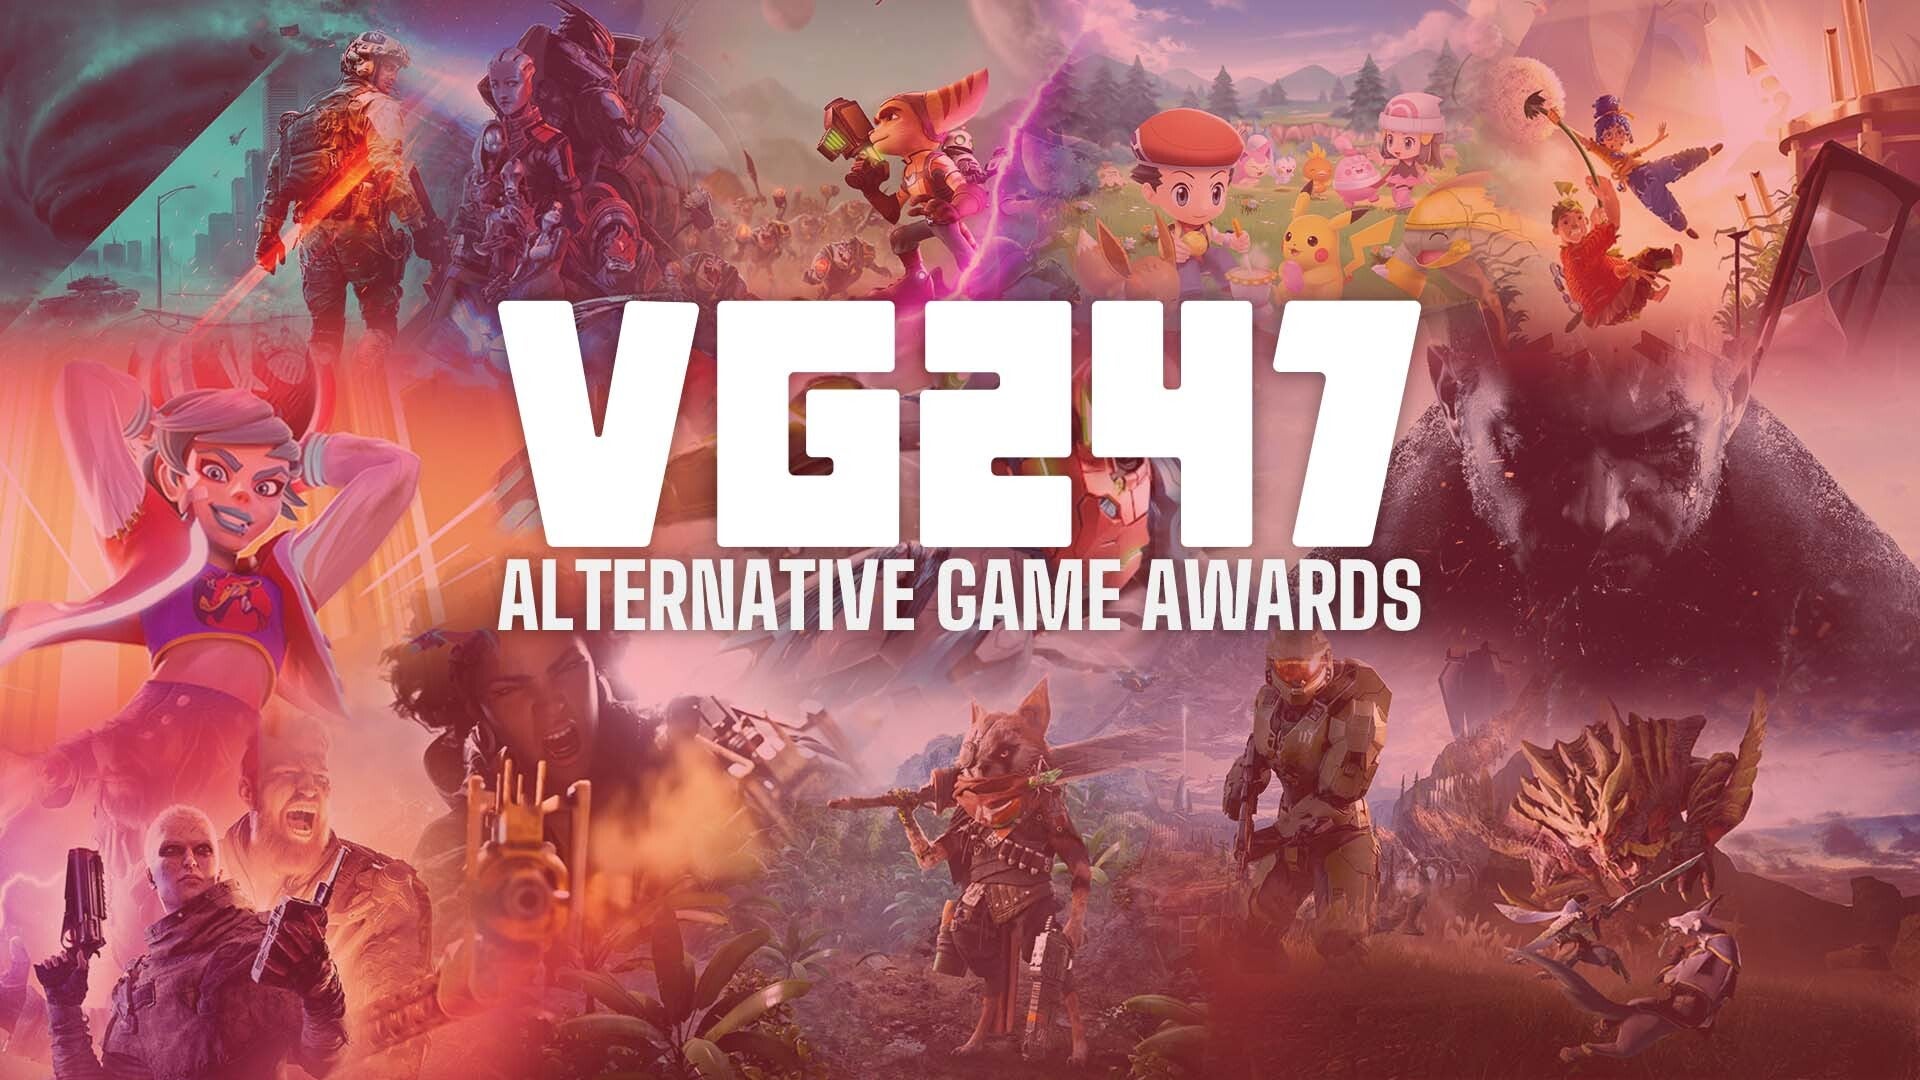 Image for VG247's Alternate Game Awards 2021